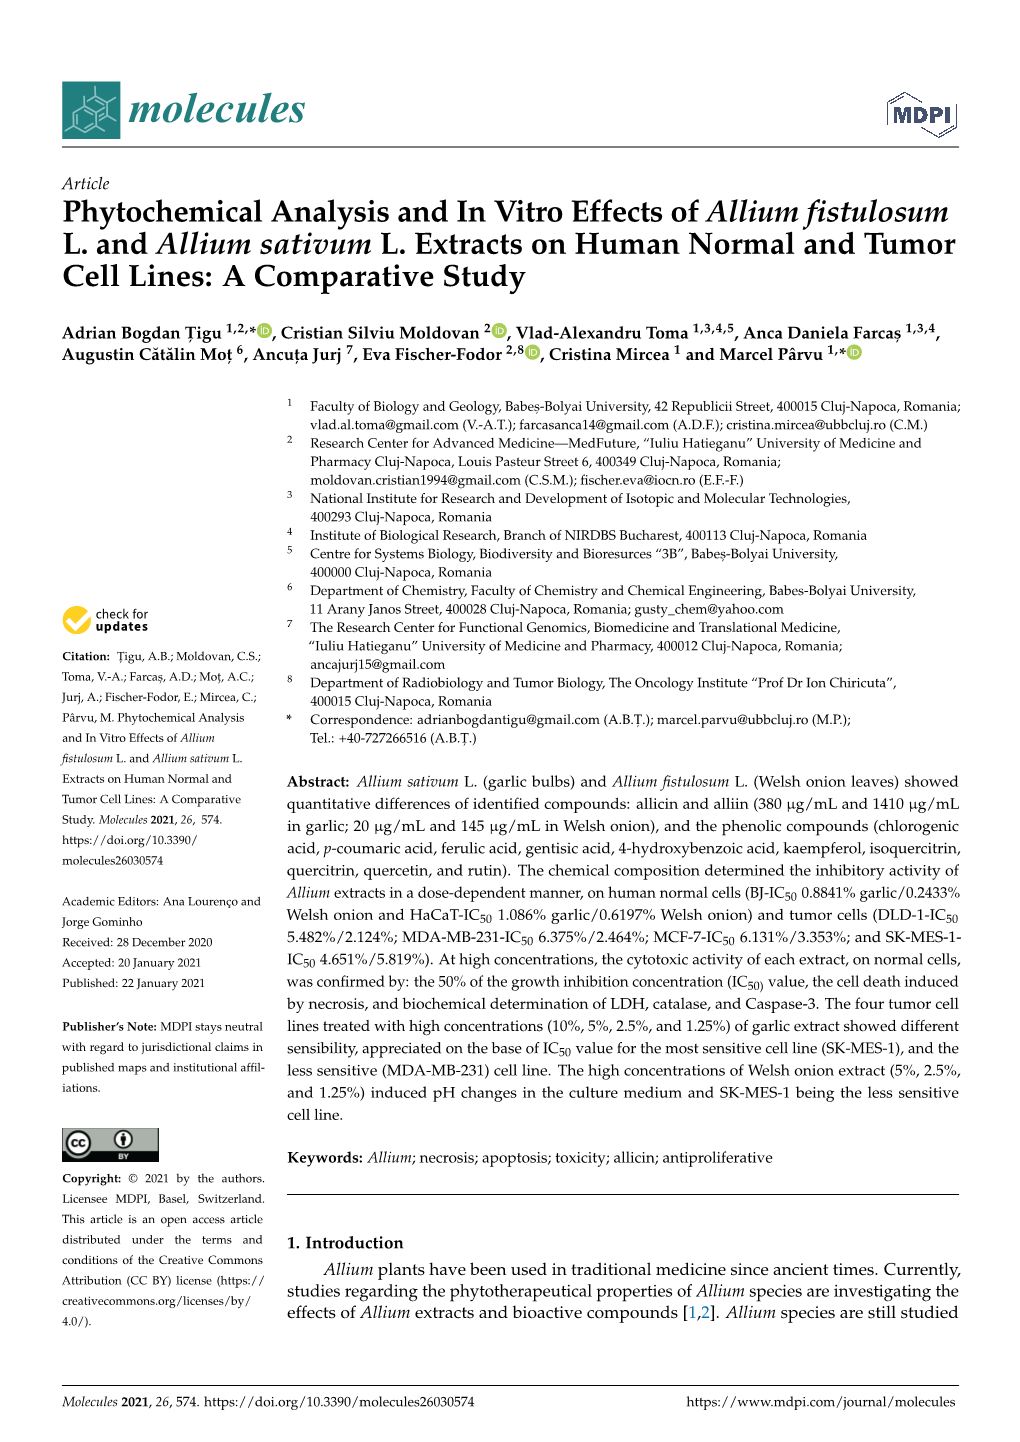 Phytochemical Analysis and in Vitro Effects of Allium Fistulosum L. and Allium Sativum L